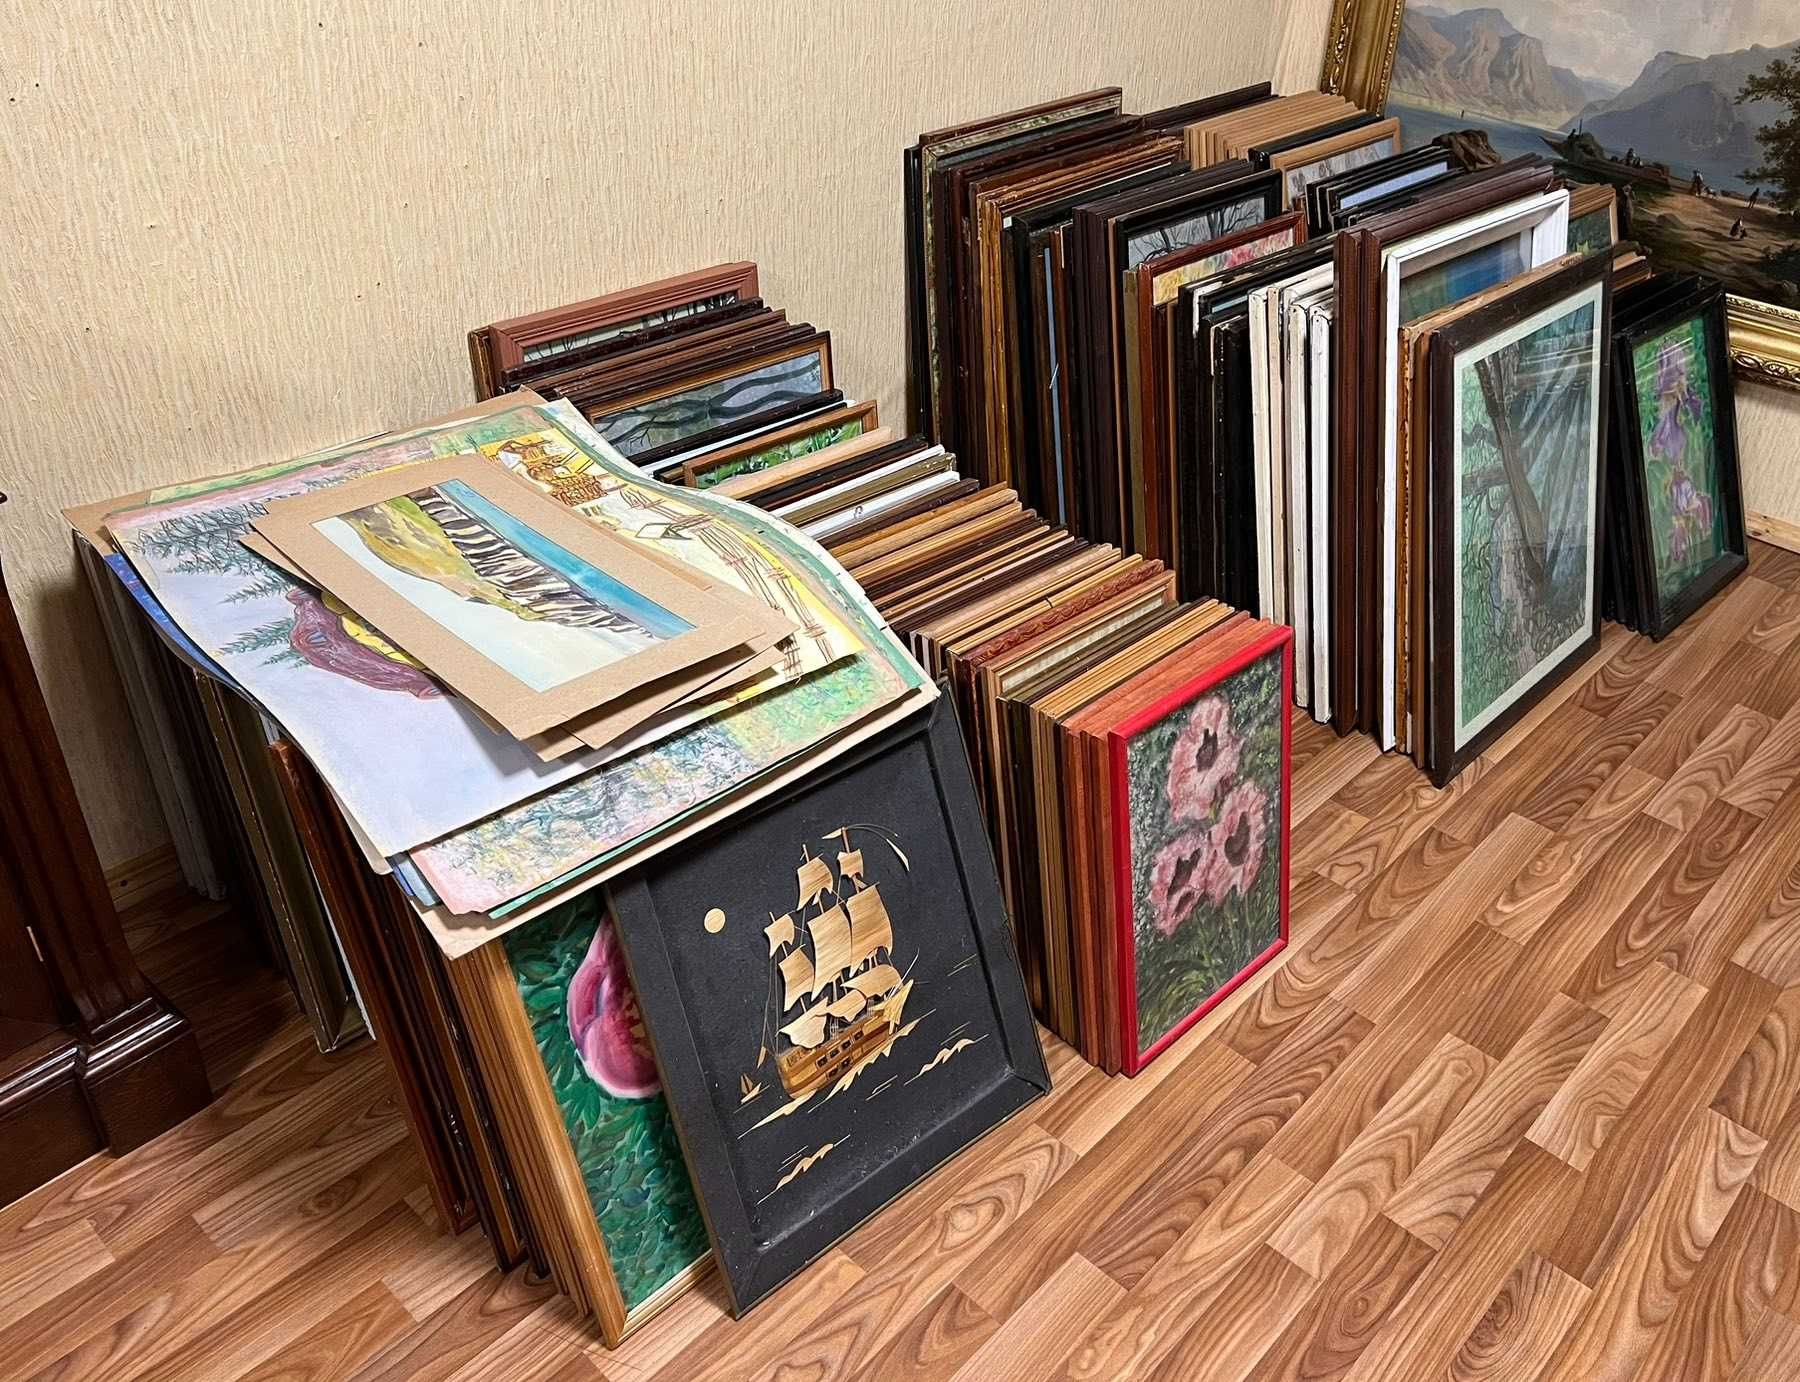 Оптовая продажа картин киевского художника Губарь В.И